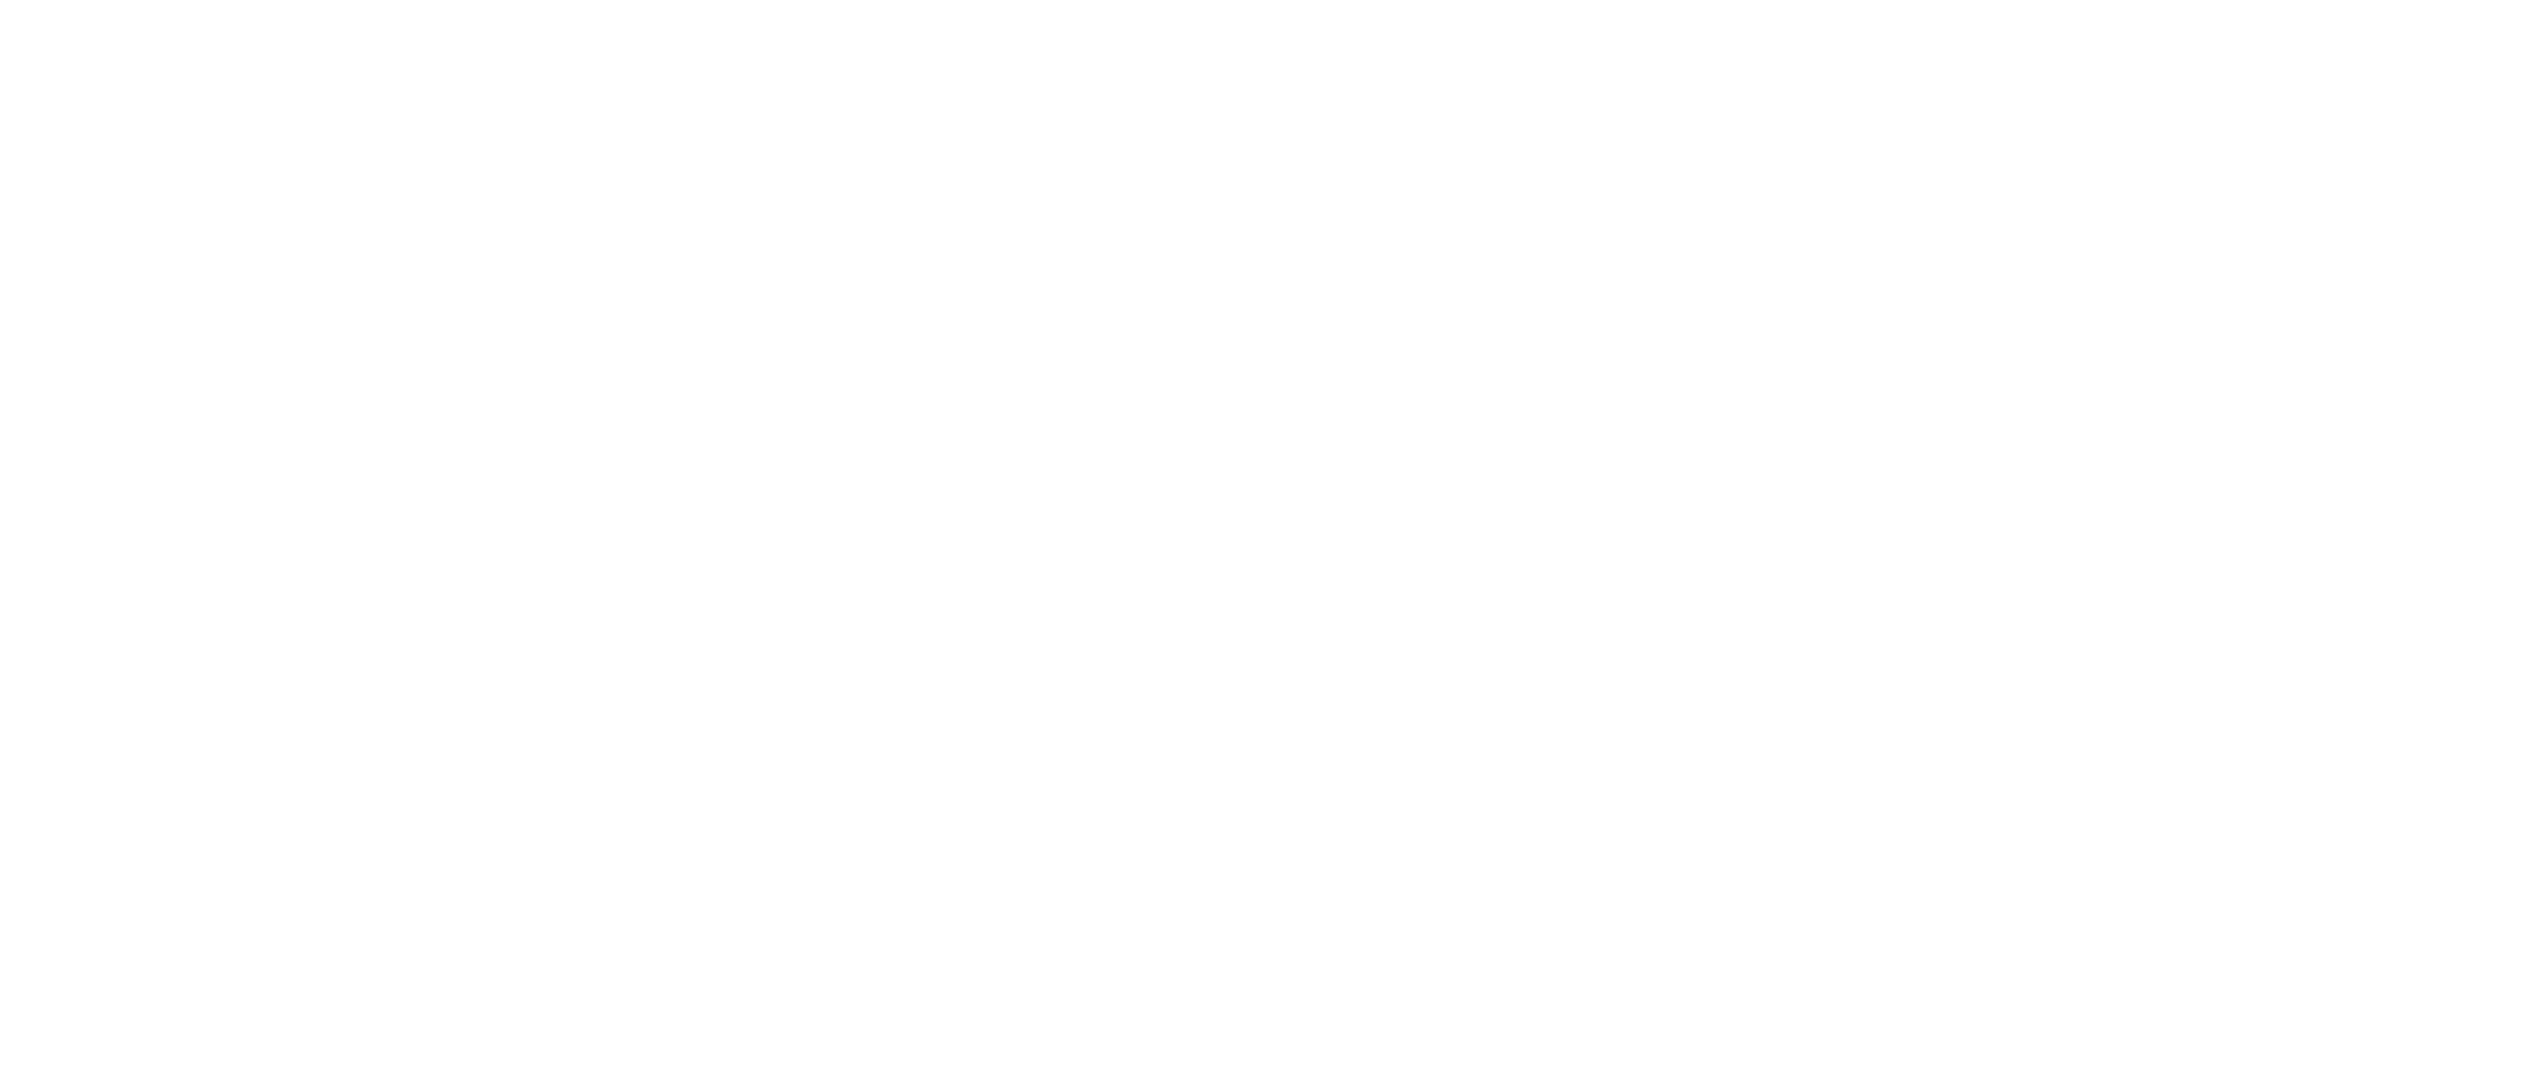 Global Ag Tech Alliance